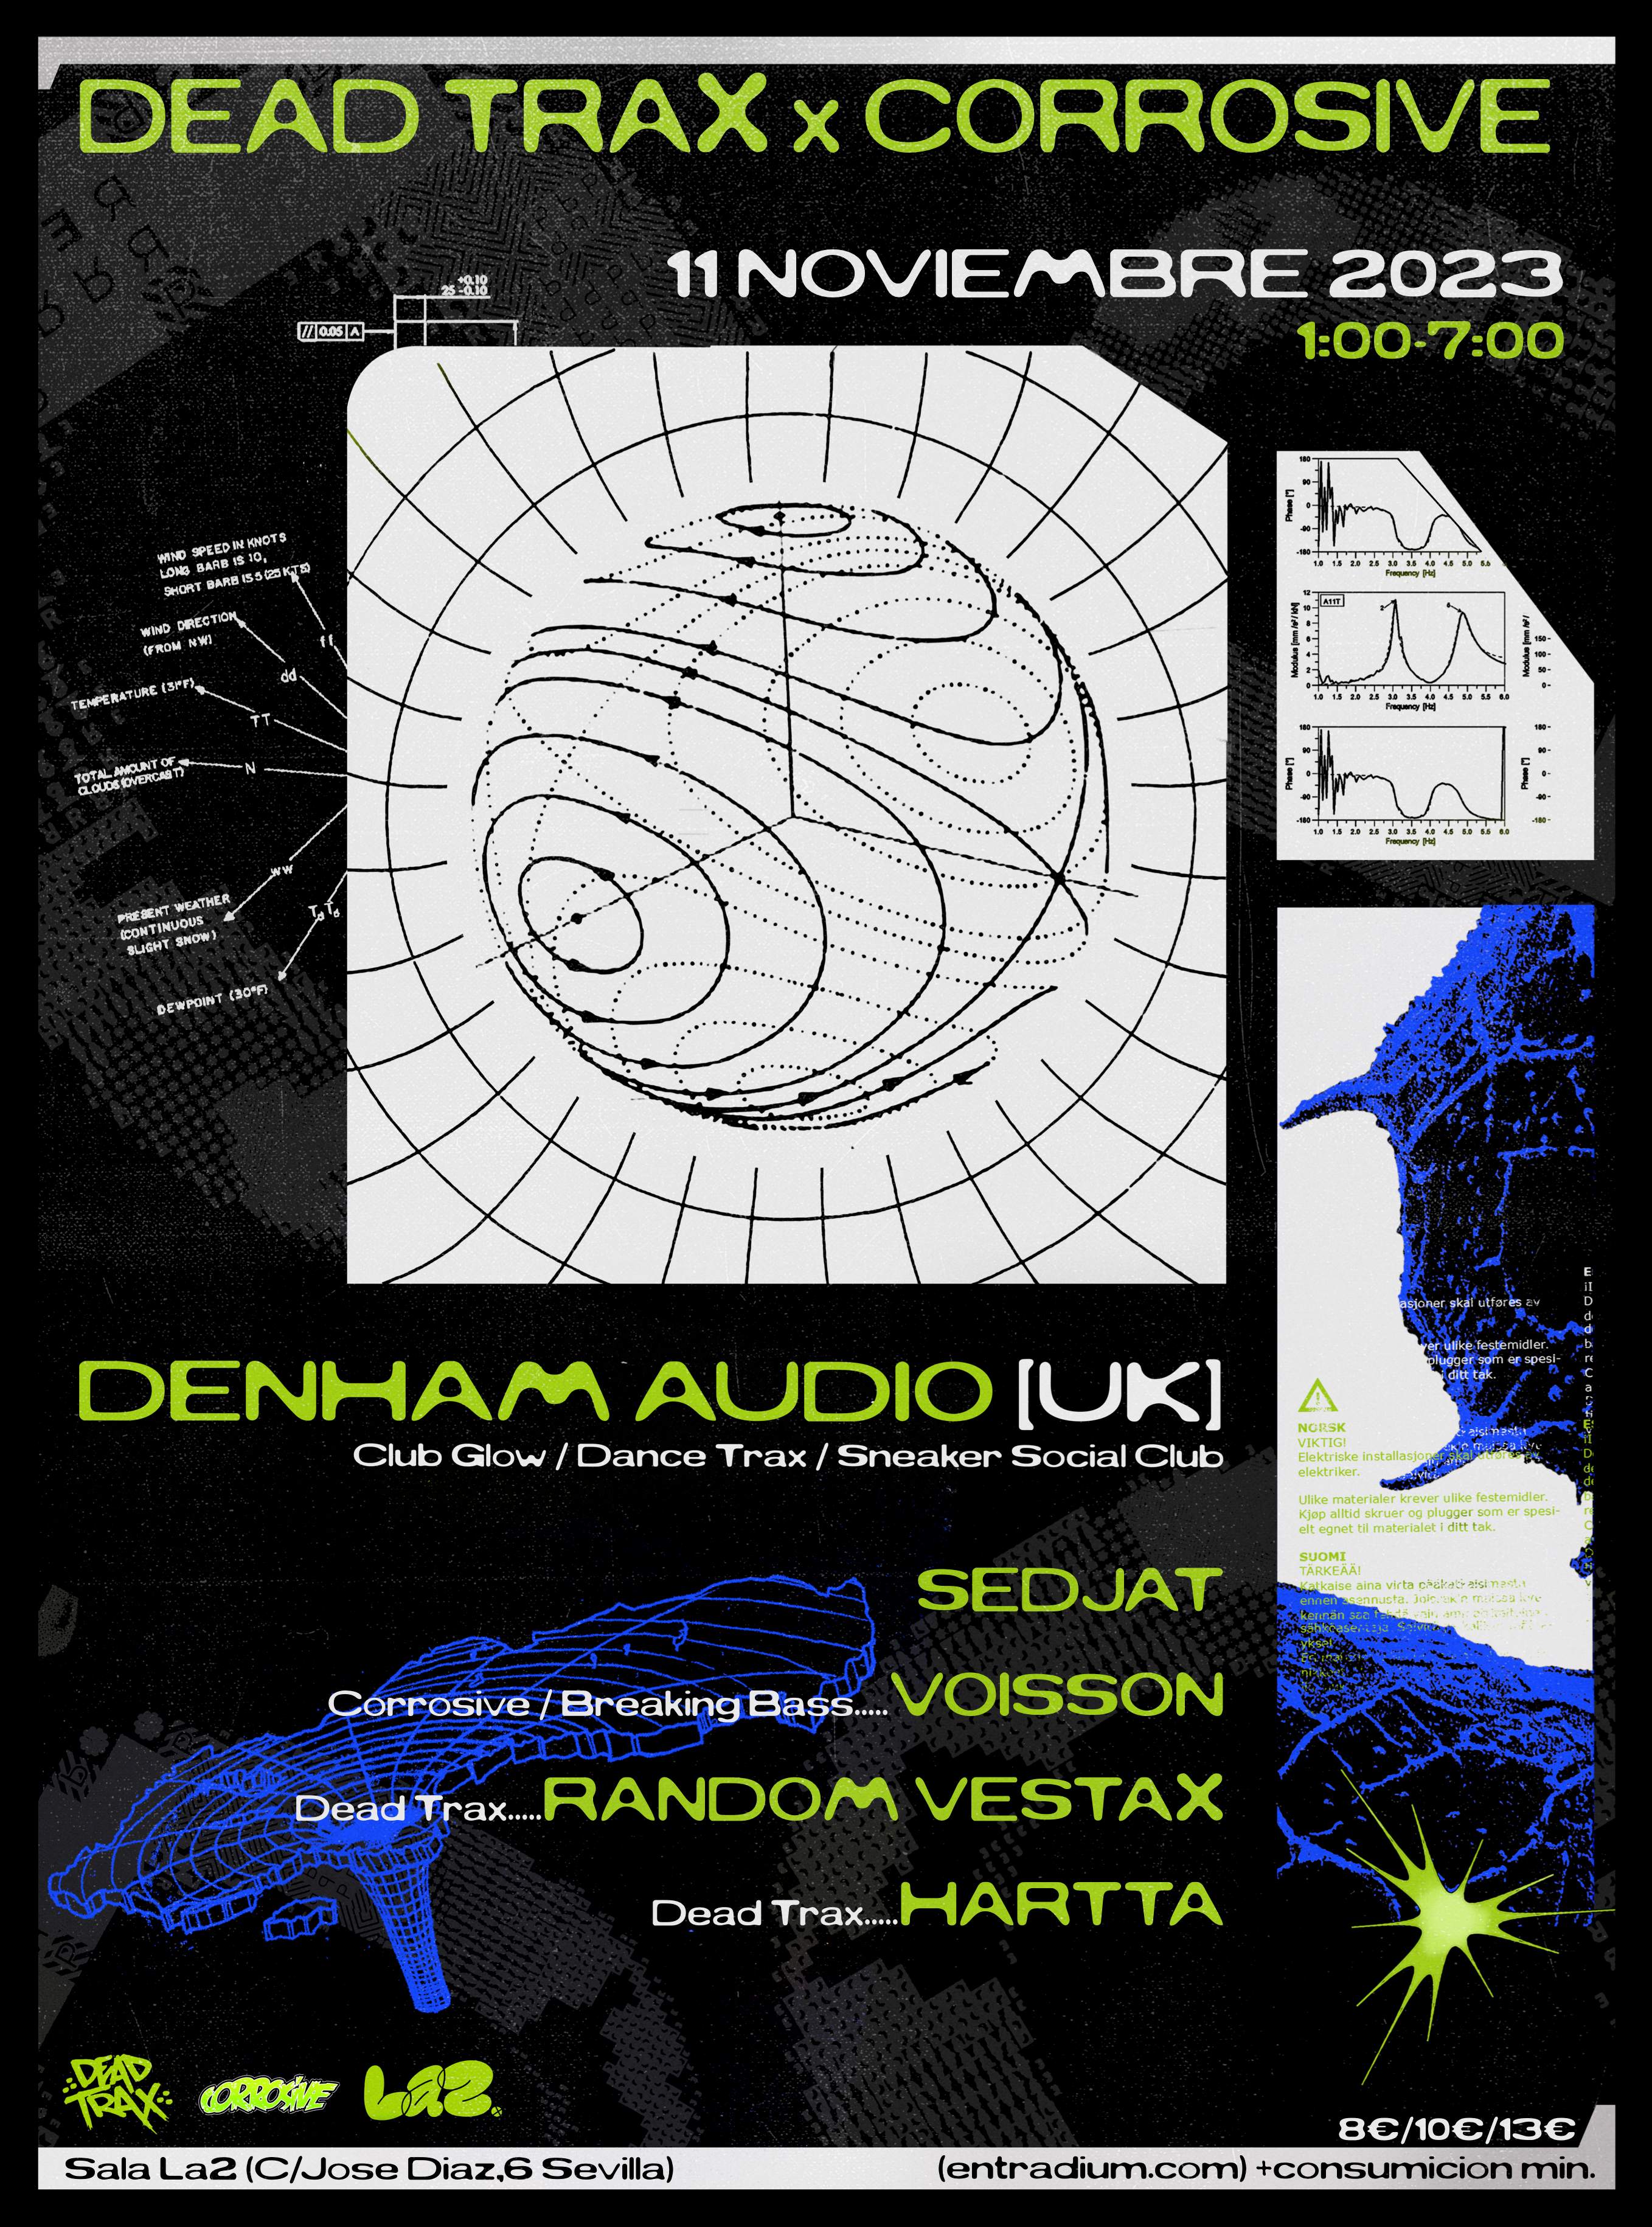 Dead Trax & Corrosive · Denham Audio, Sedjat, Voisson, Random Vestax, Hartta - フライヤー表